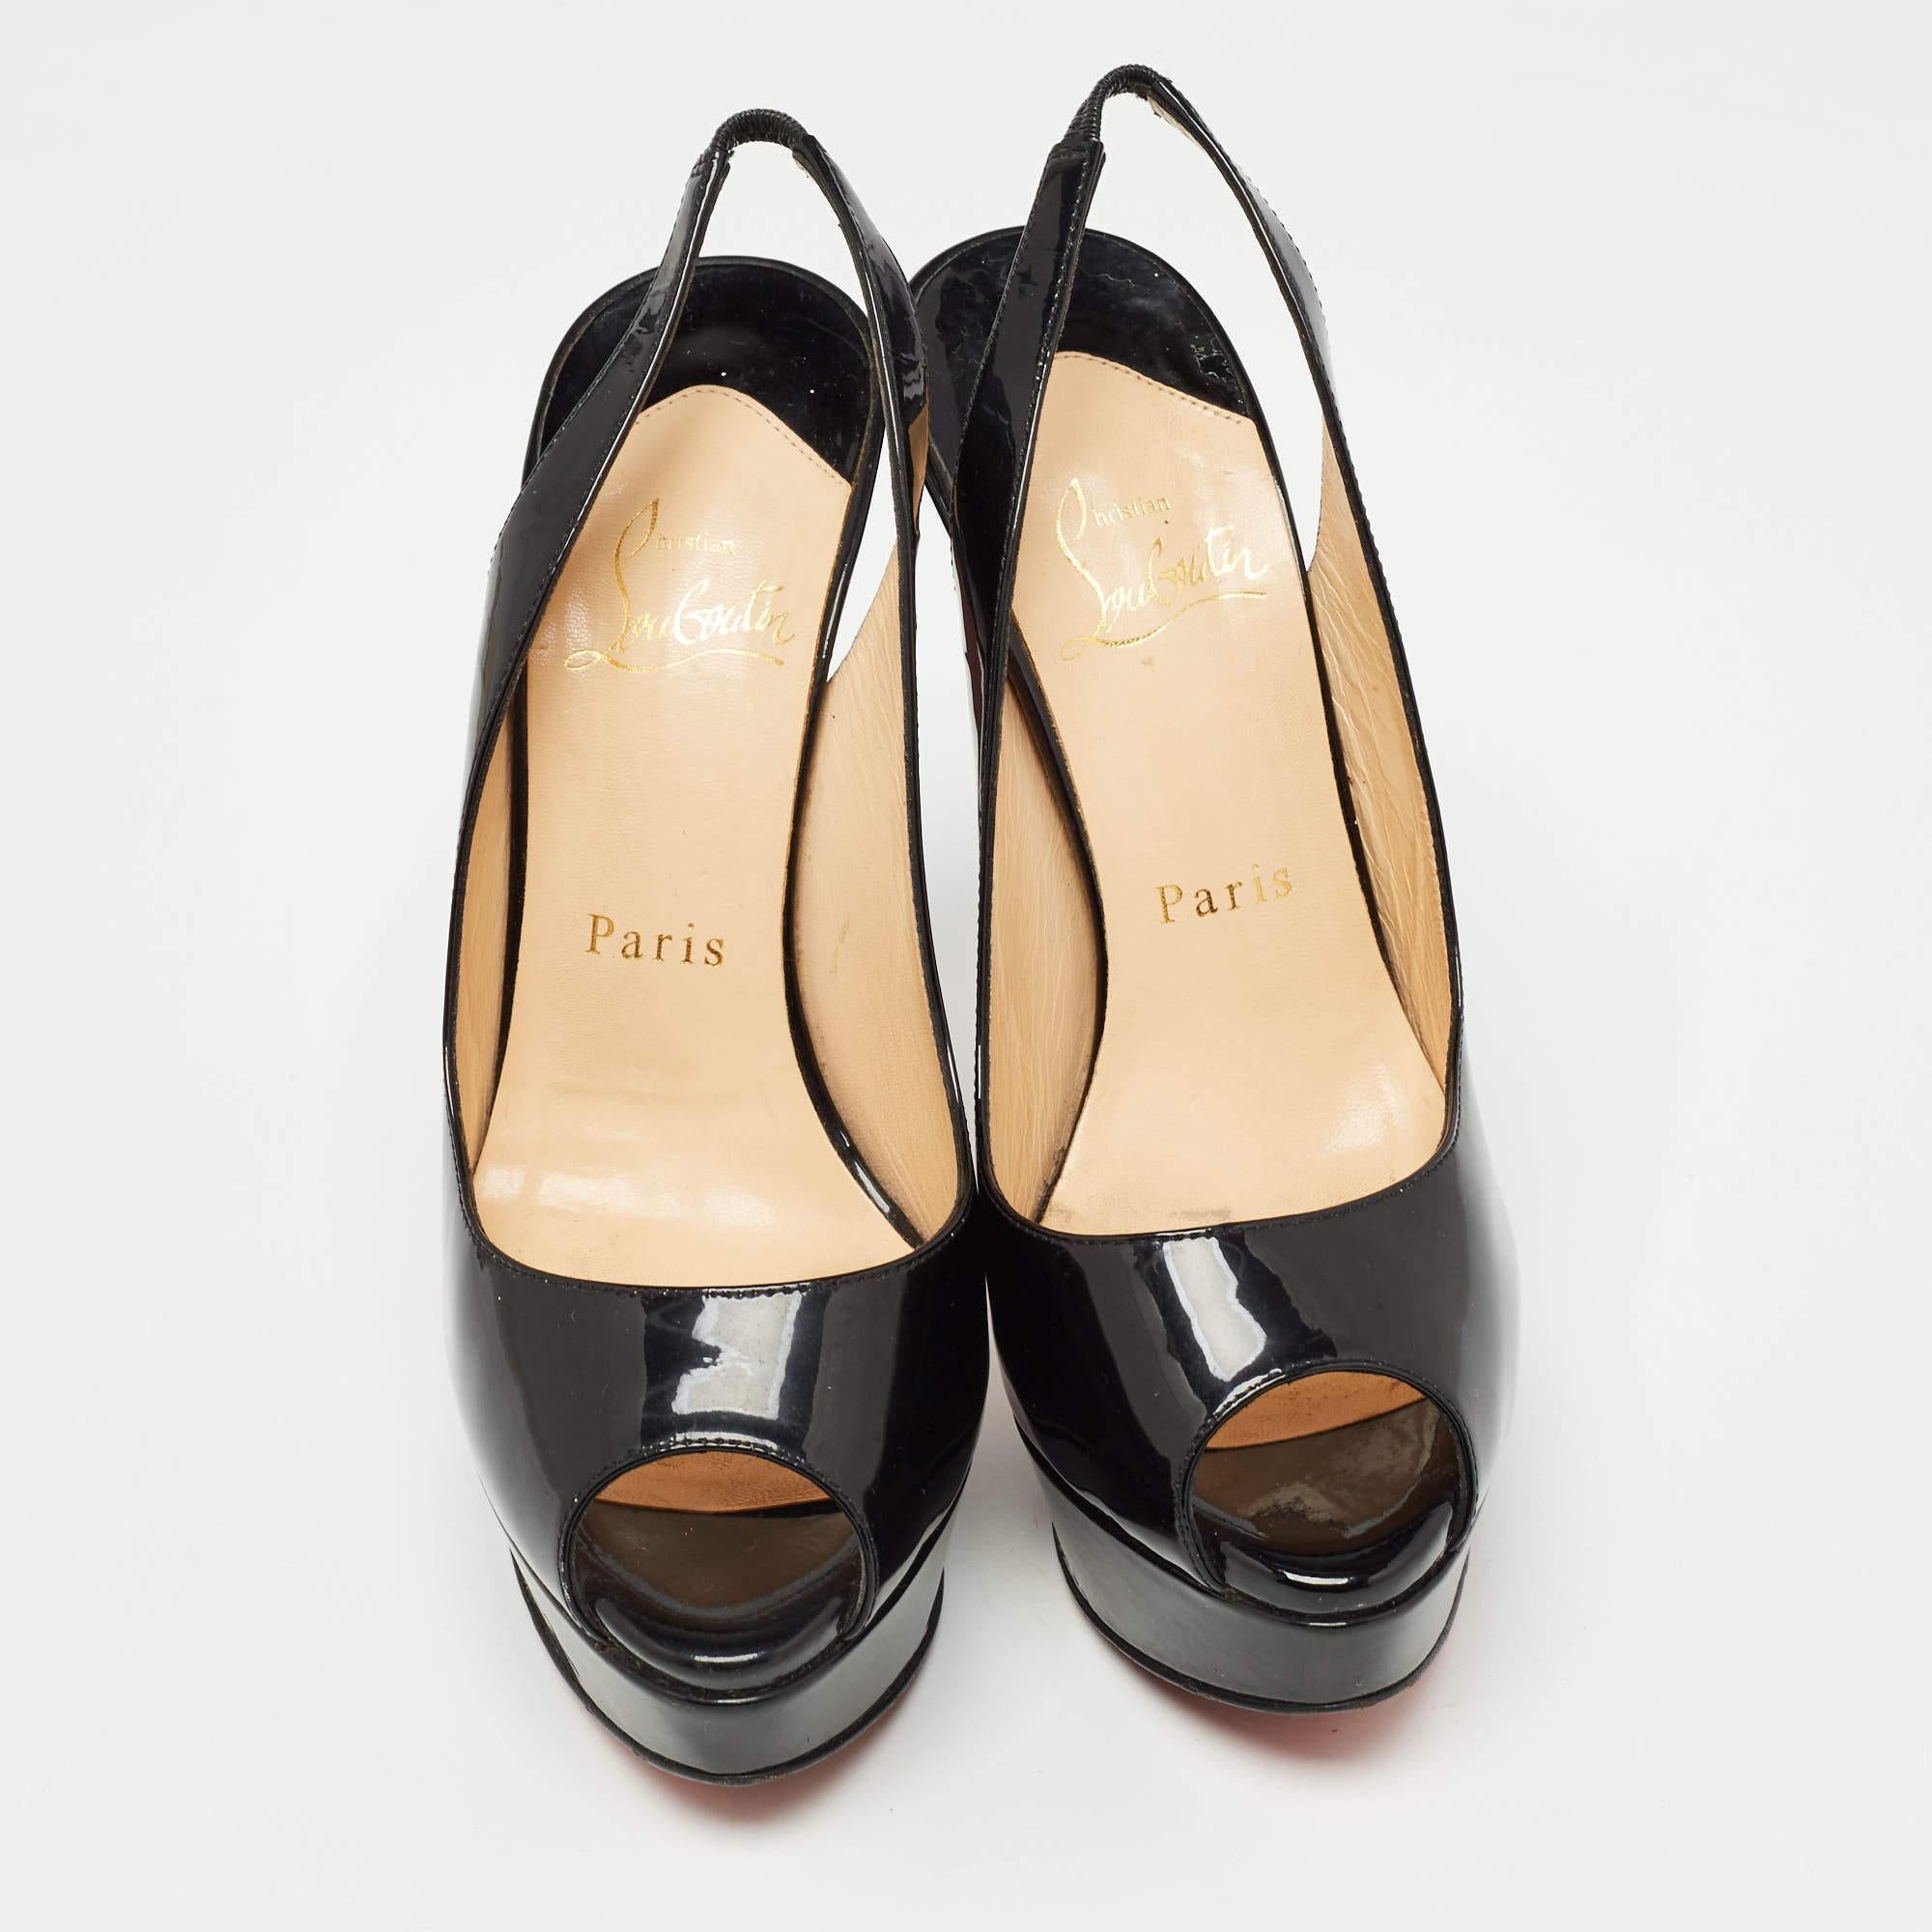 Ces escarpins noirs de Christian Louboutin sont destinés à être un choix aimé. Merveilleusement confectionnés et équilibrés sur des talons élégants, ces escarpins soulèveront vos pieds dans une silhouette éblouissante.

Comprend : Boîte d'origine,